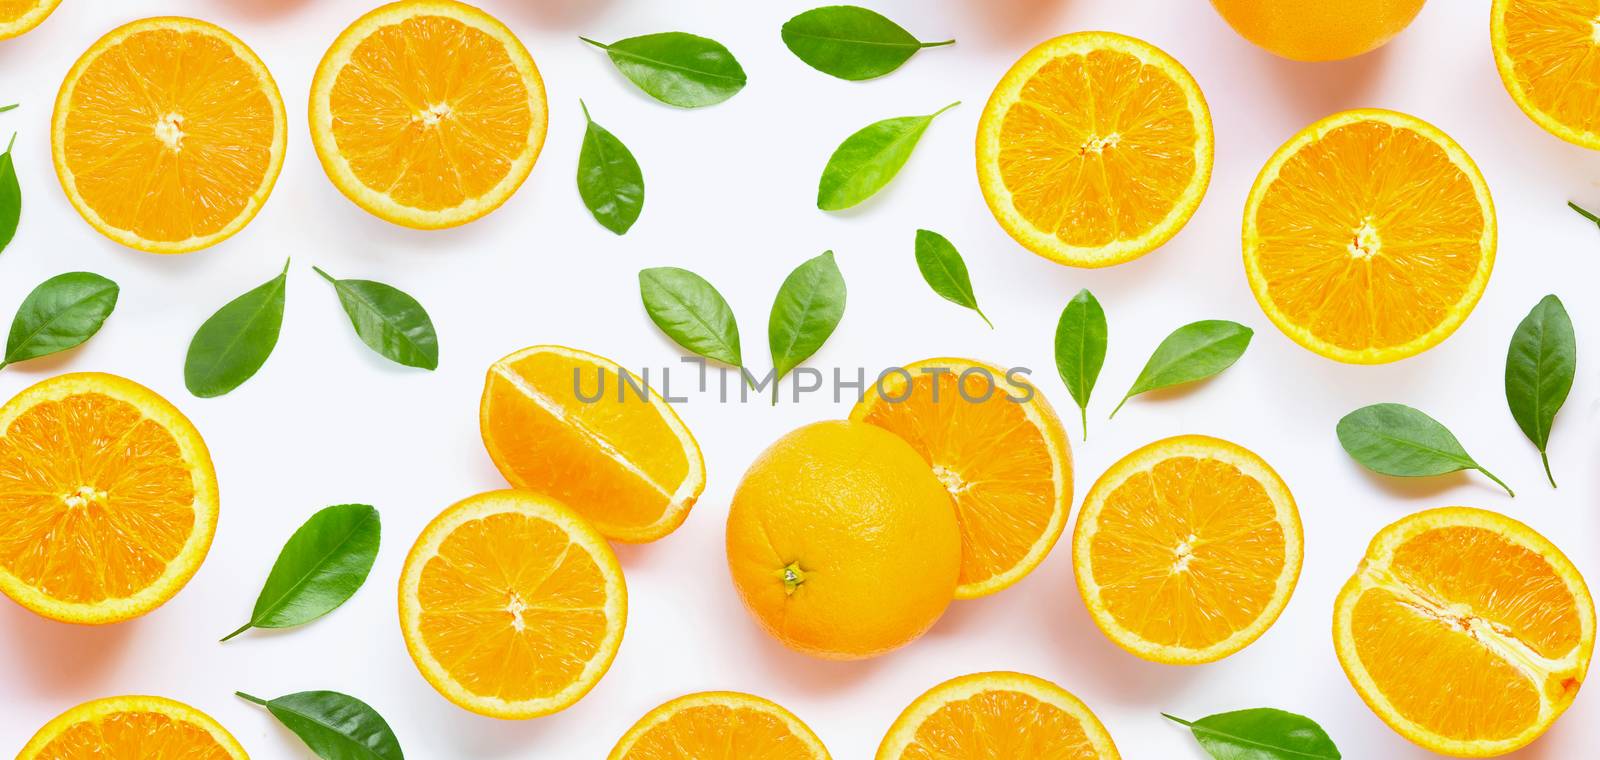 Fresh orange citrus fruit with leaves isolated on white backgrou by Bowonpat